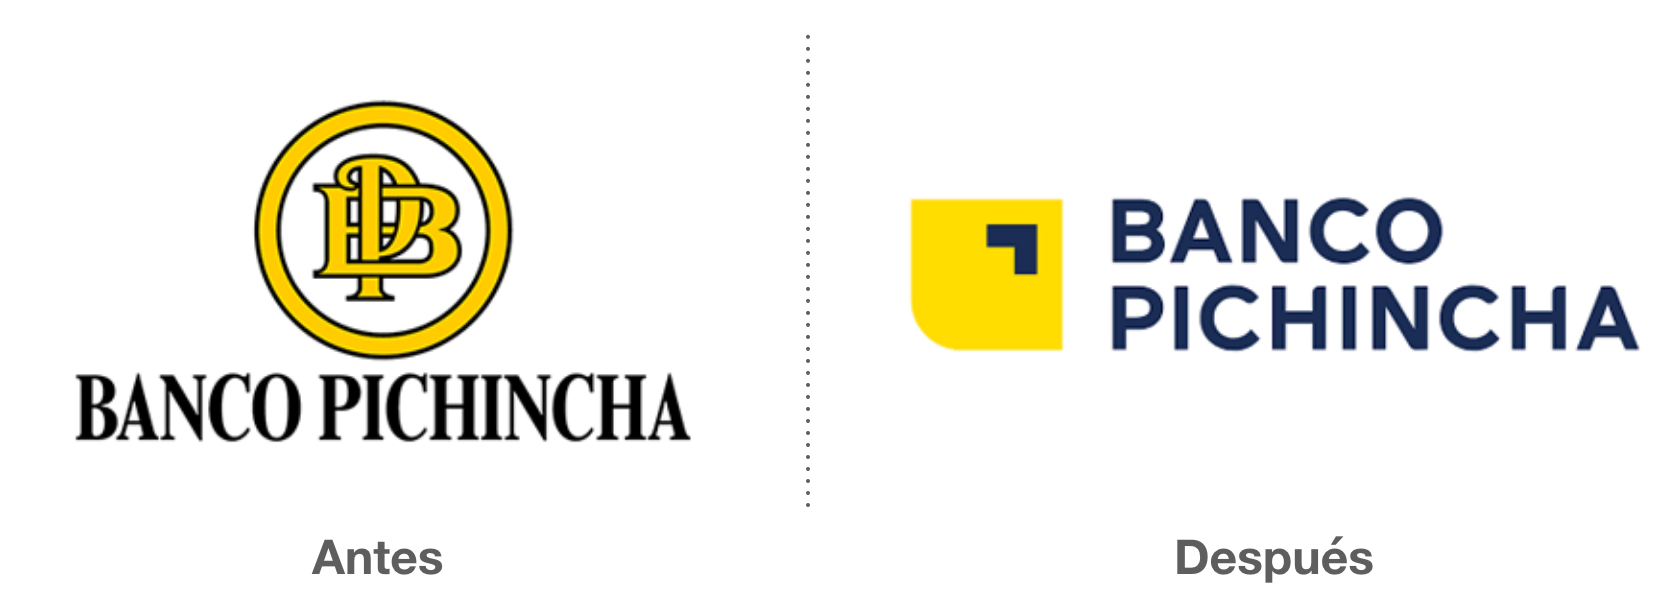 Banco Pichincha Antes Despues 2018